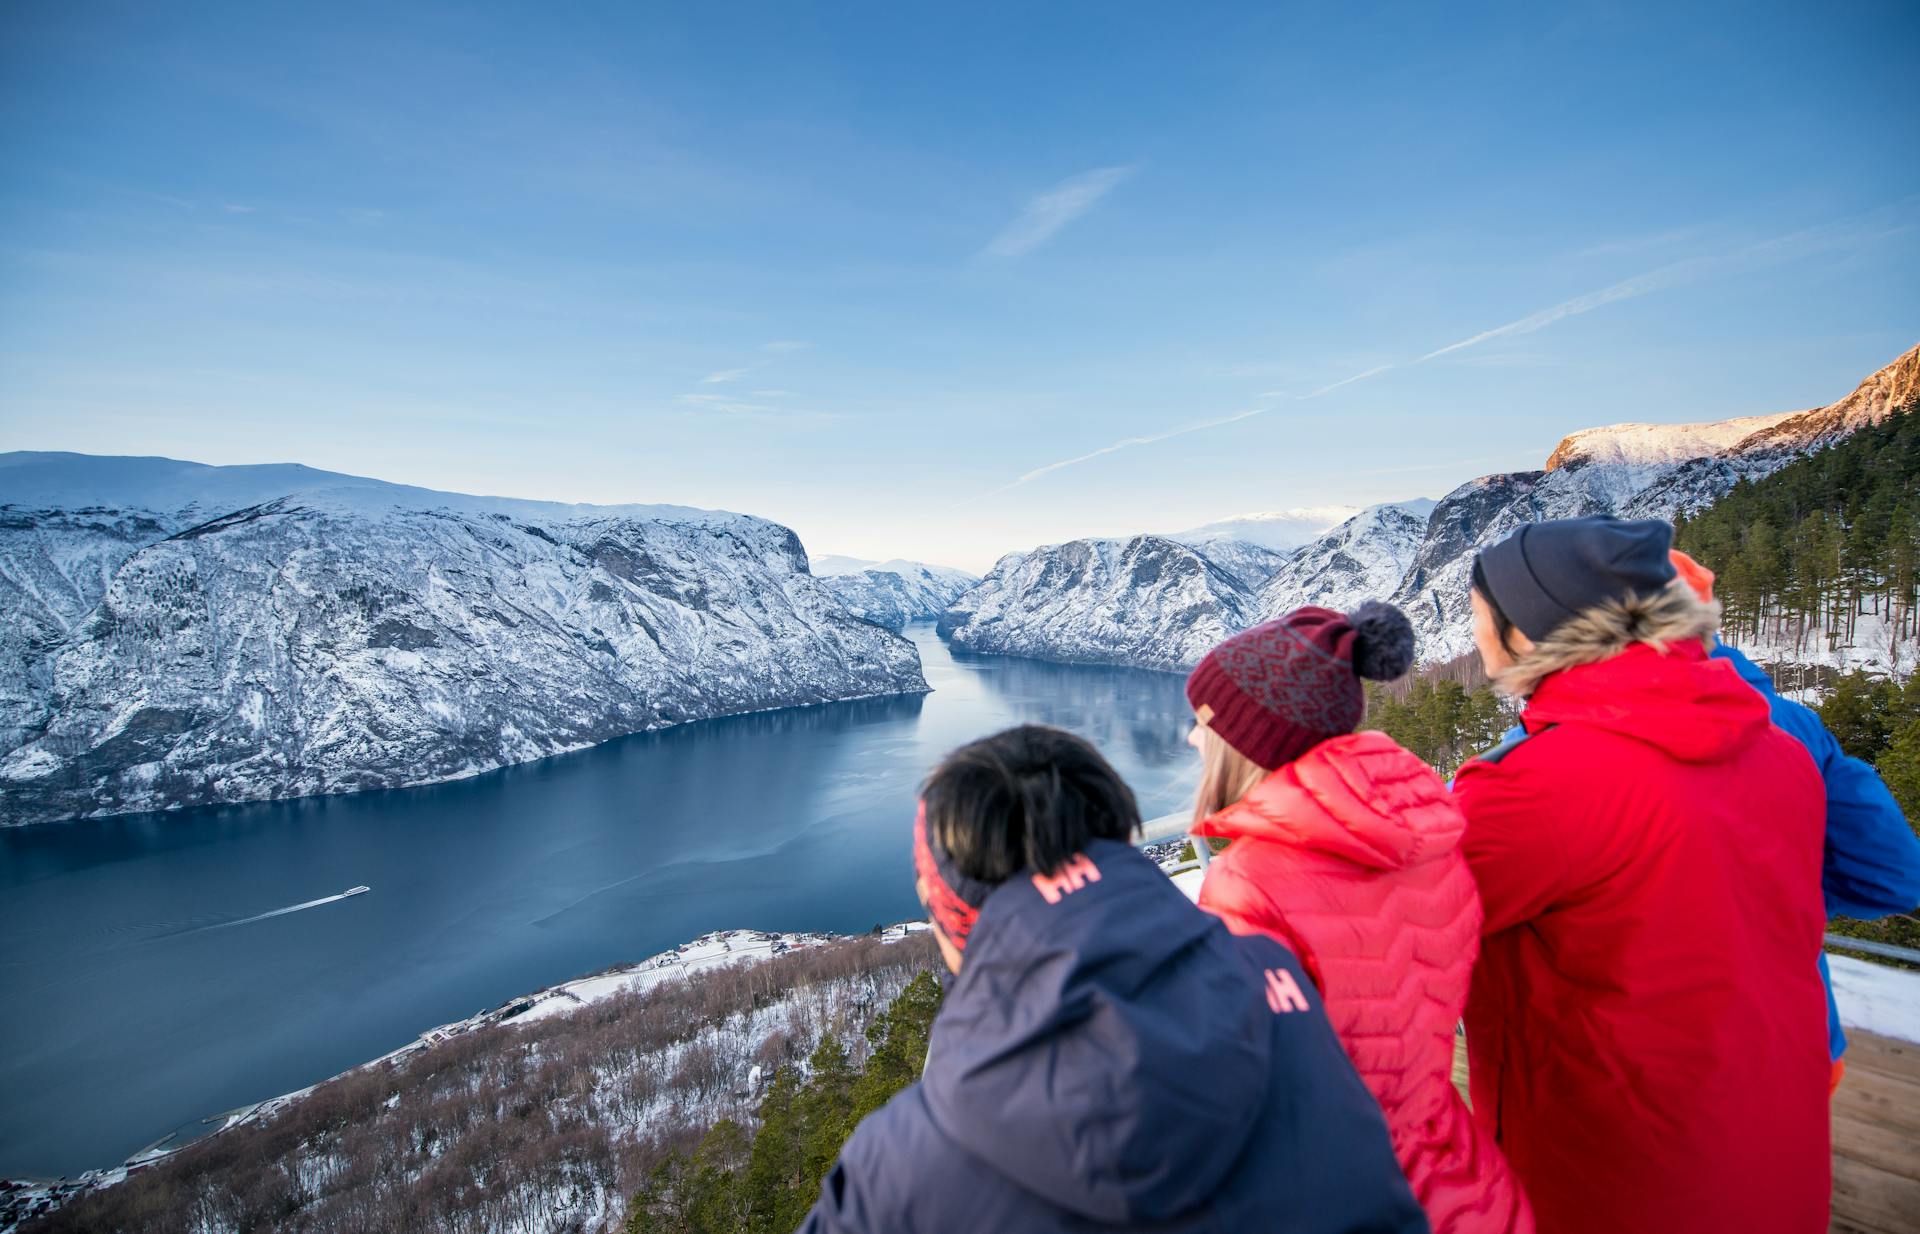 Group of friends looking at beutiful fjord scenery in myrkdalen ski resort in Norway